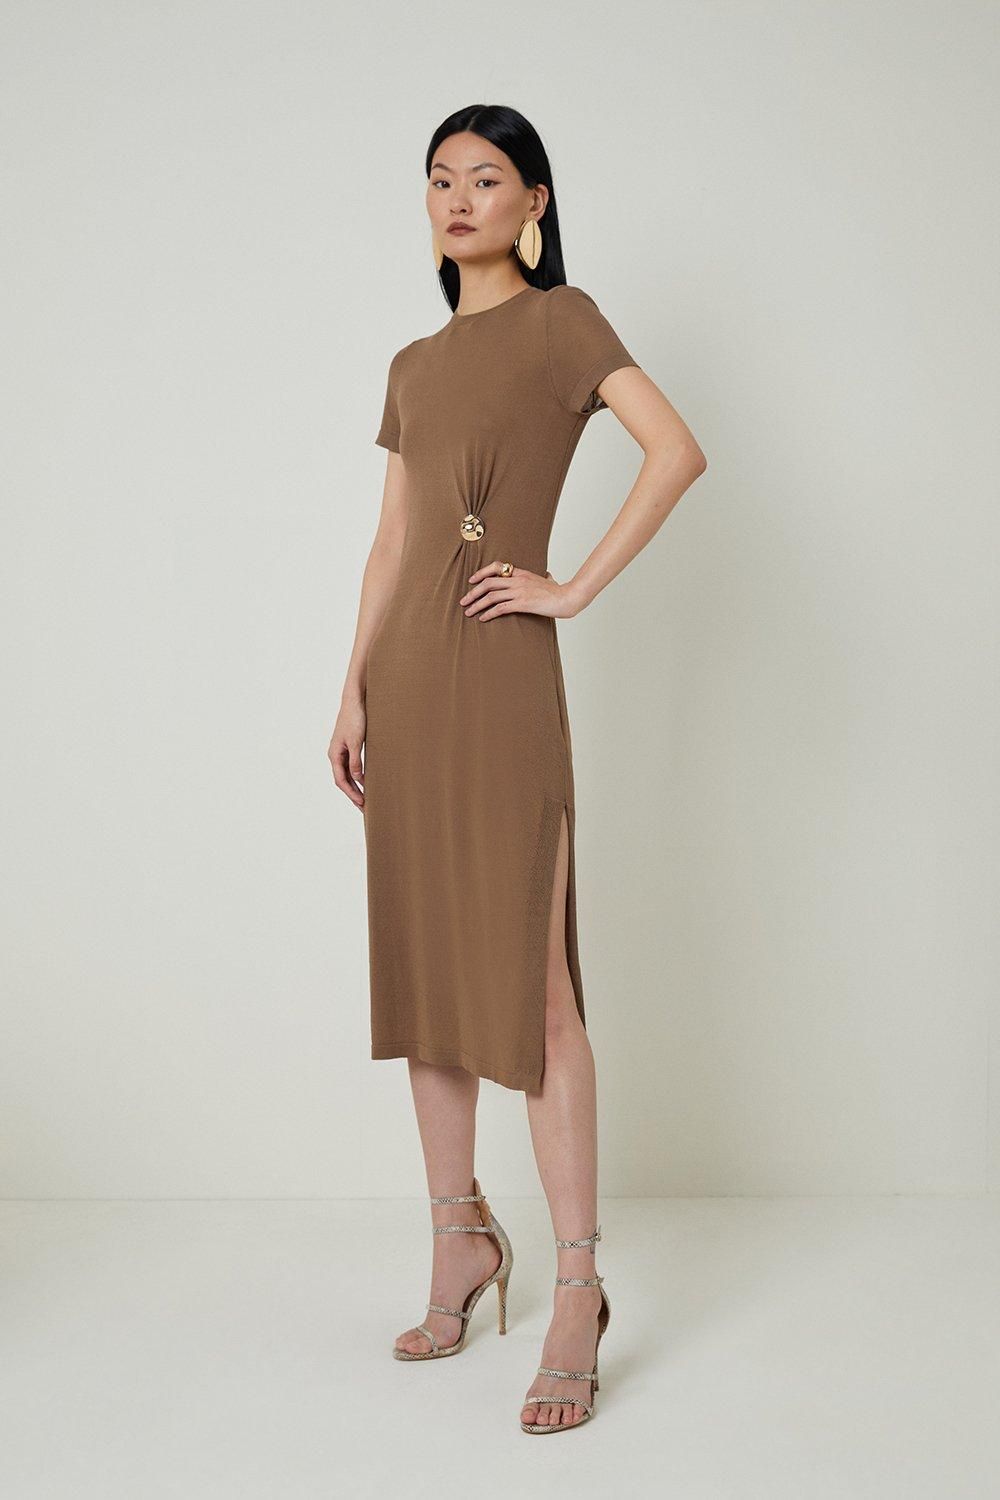 Trimmed Summer Knit Column Dress | Karen Millen US